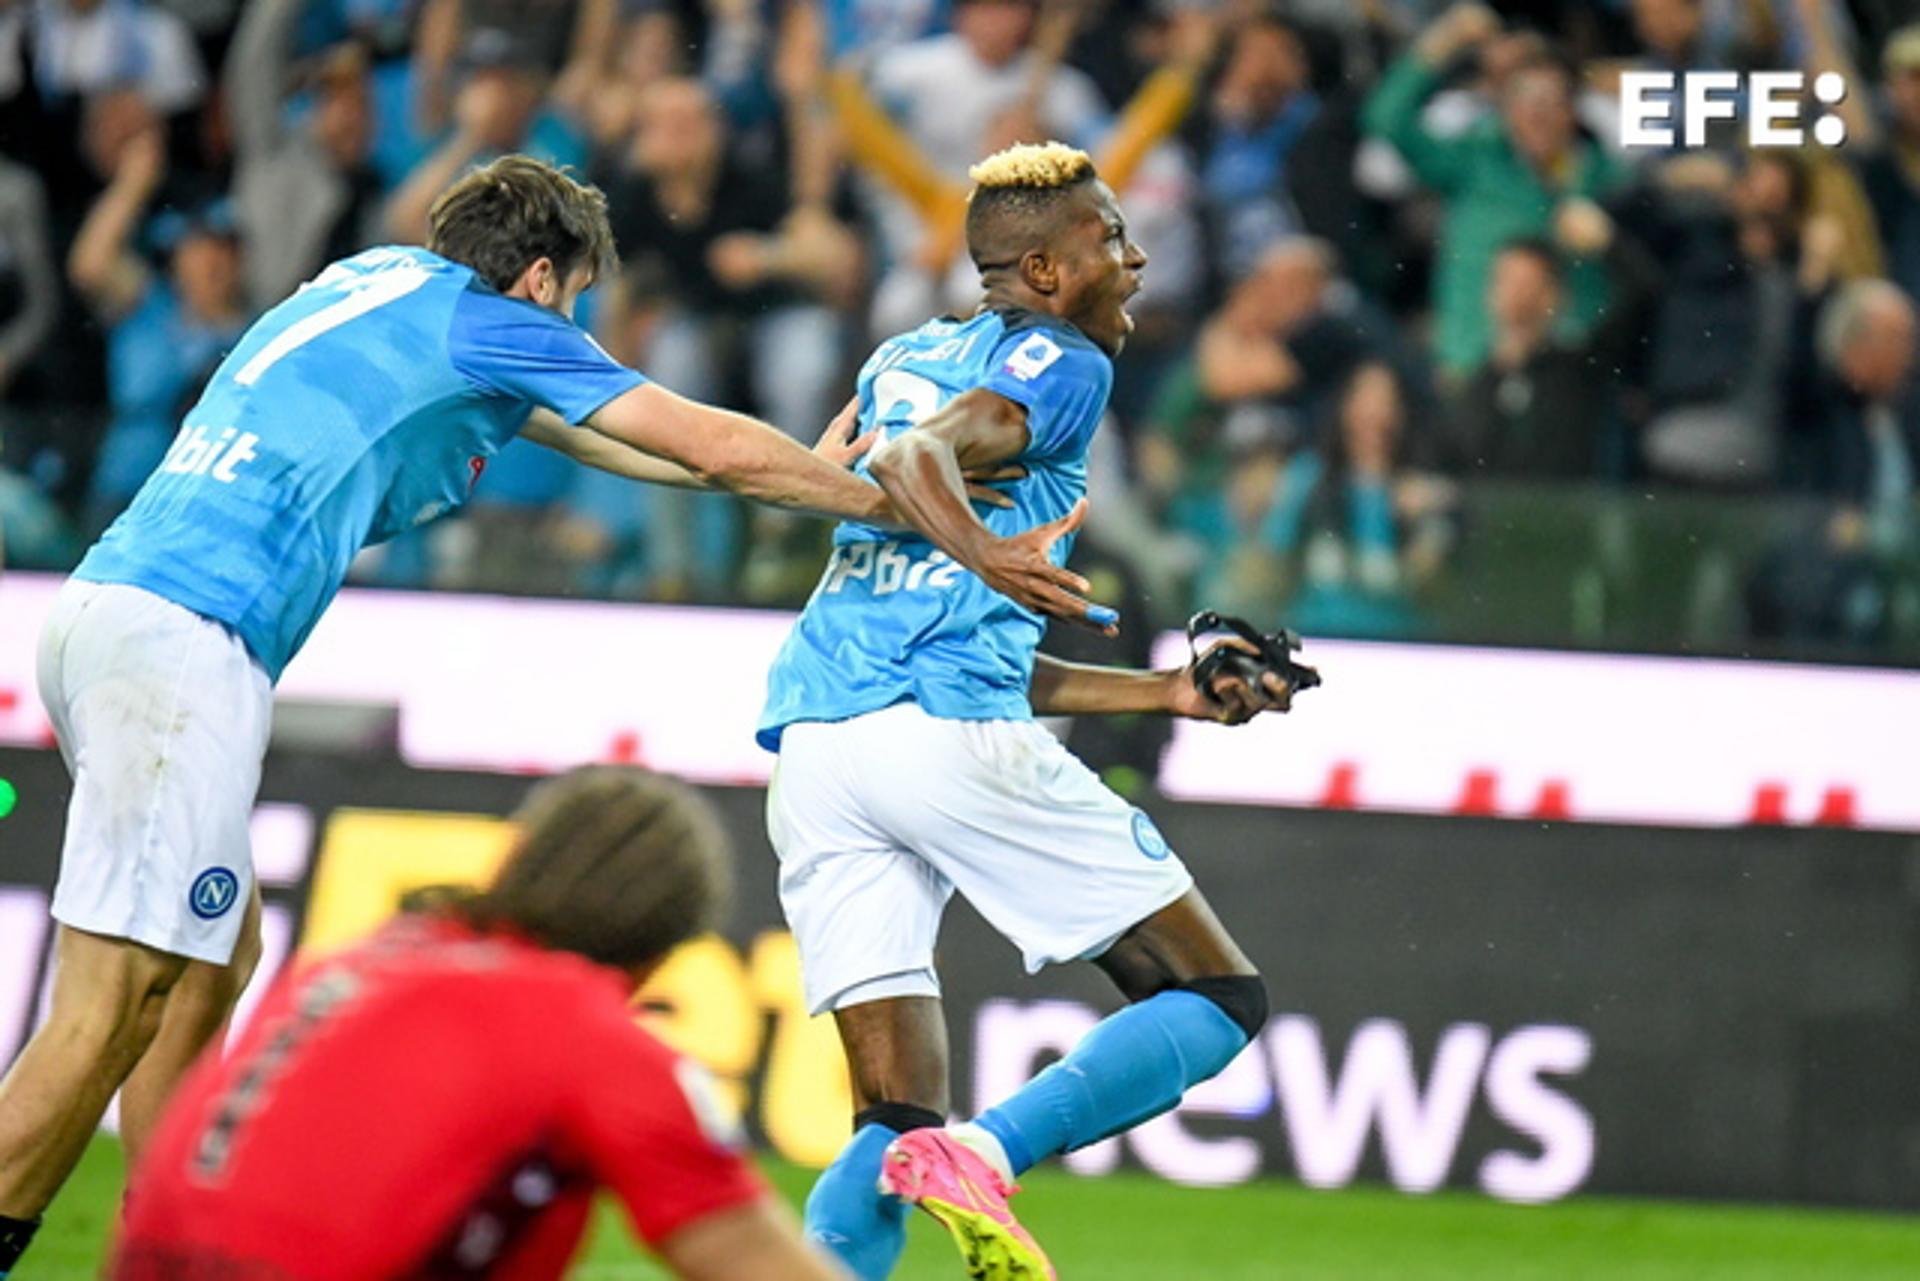 Napoli clinch 1st Serie A title since Maradona era